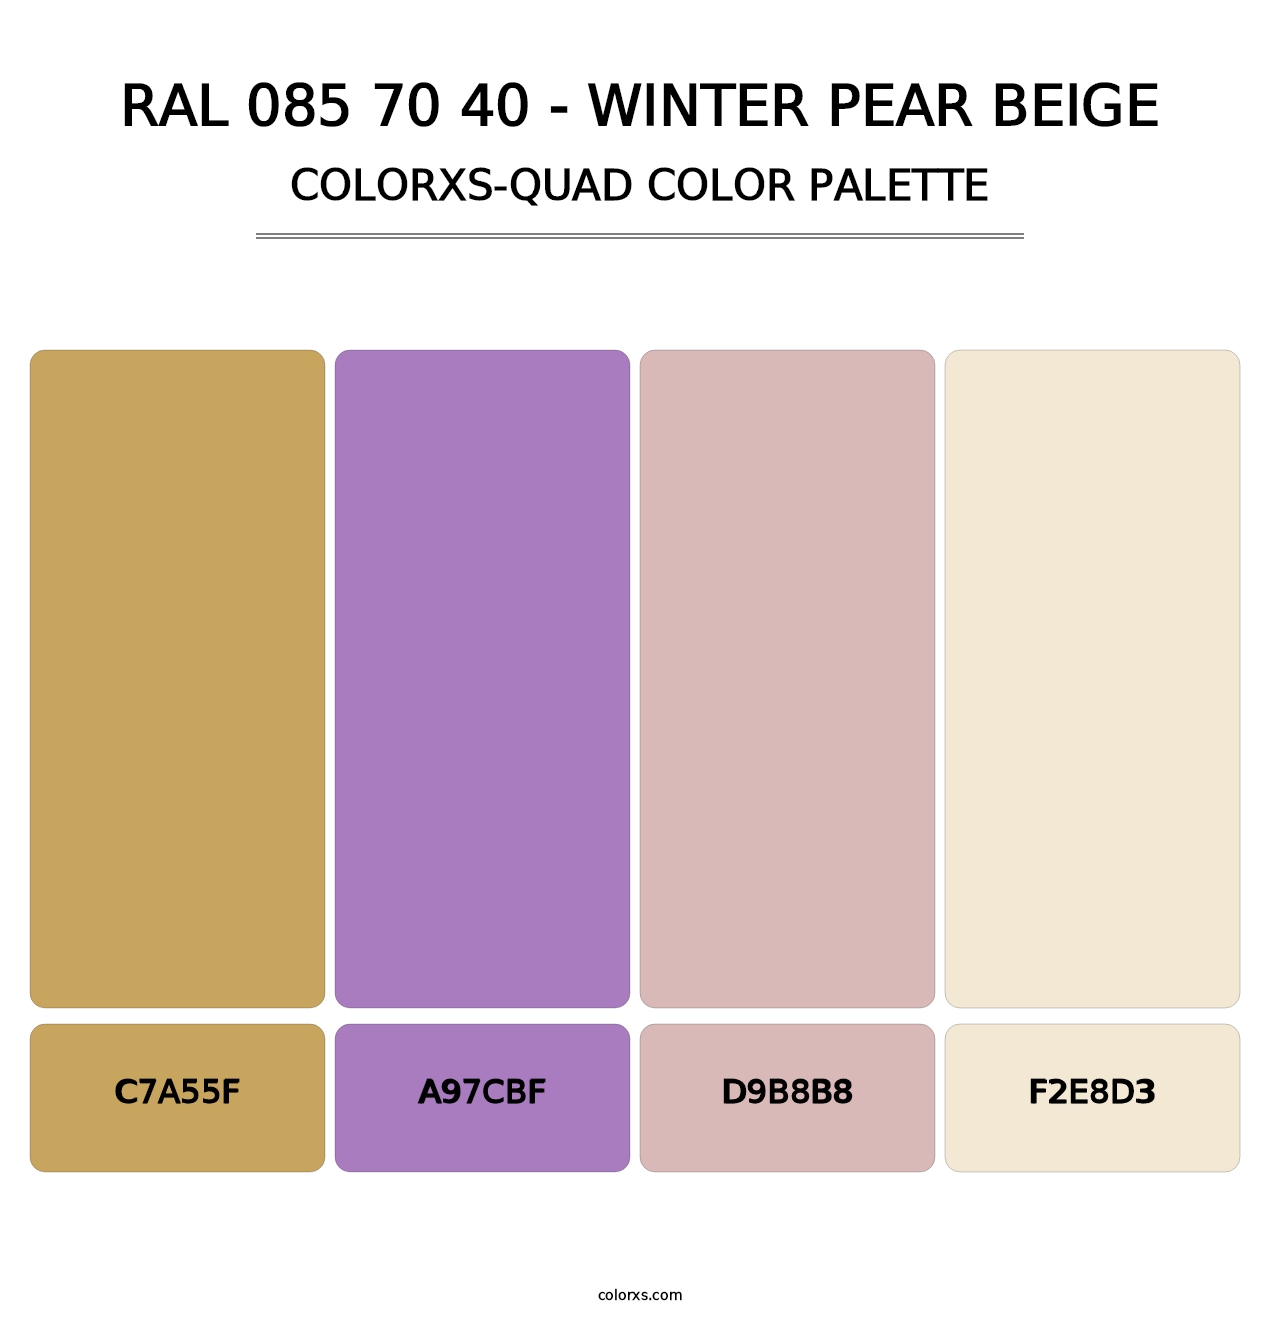 RAL 085 70 40 - Winter Pear Beige - Colorxs Quad Palette